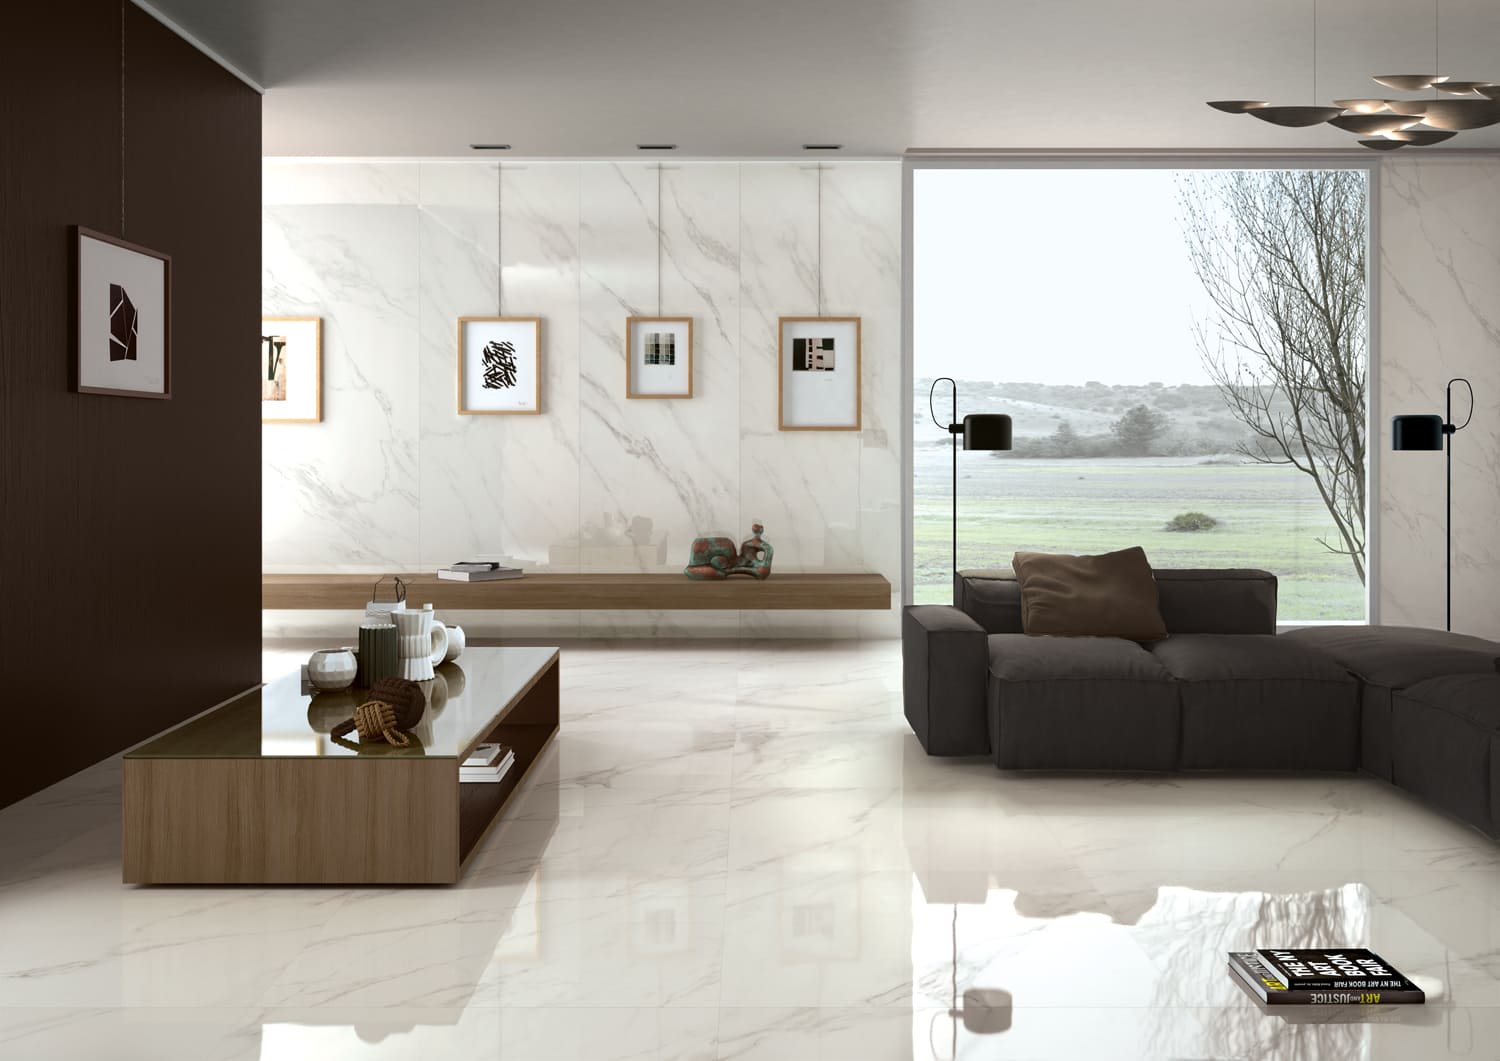 pavimenti-rivestimenti-effetto-marmo-cotto-deste-8842-z-Amb-Kerlite-calacatta-glossy01-fratelli-nero